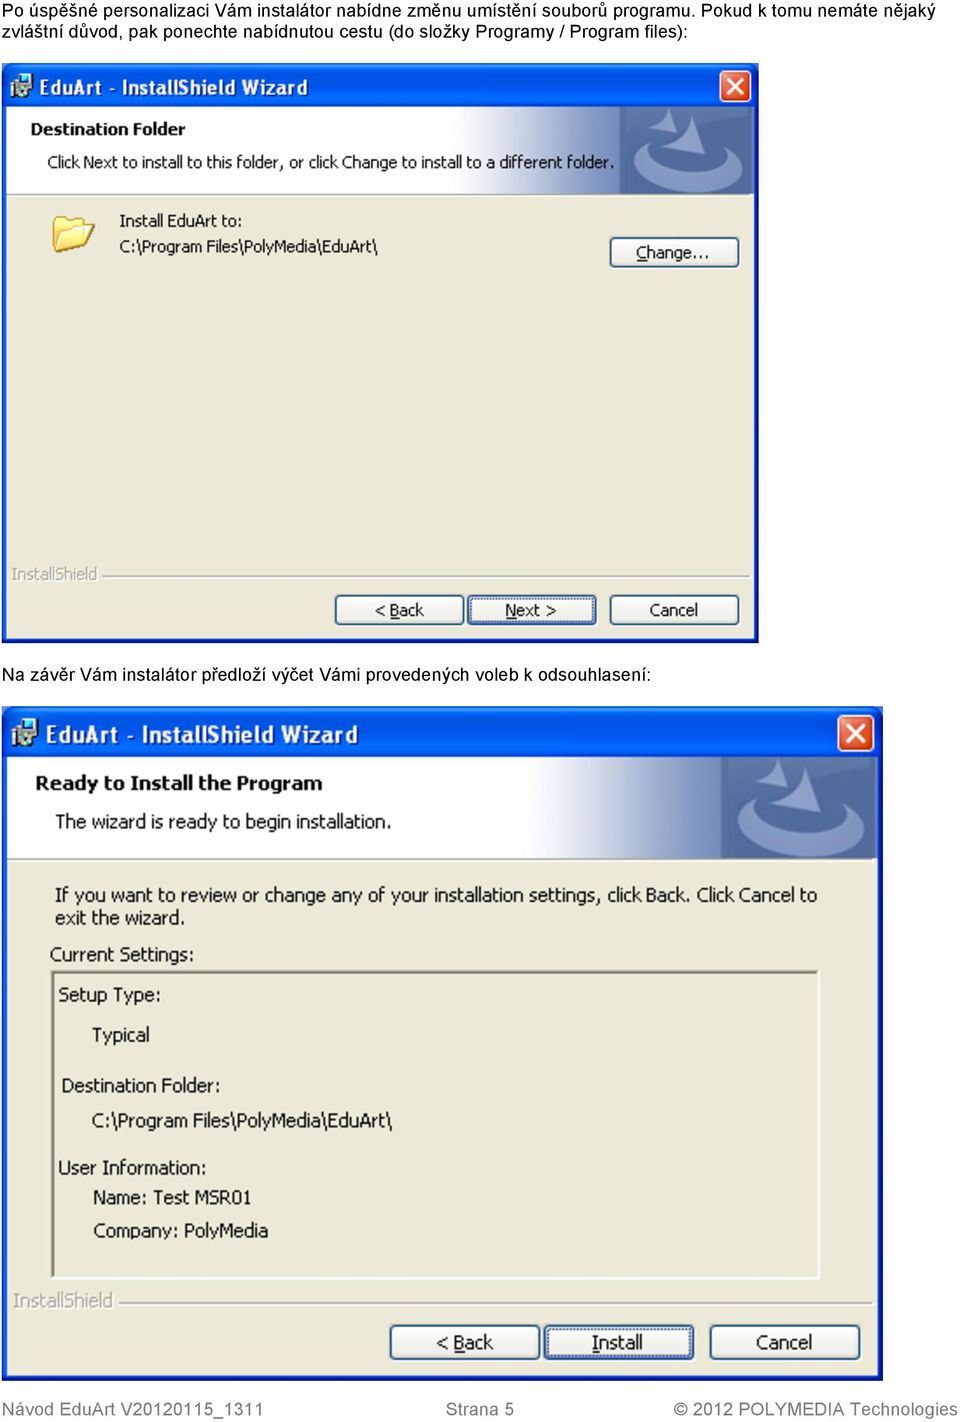 složky Programy / Program files): Na závěr Vám instalátor předloží výčet Vámi